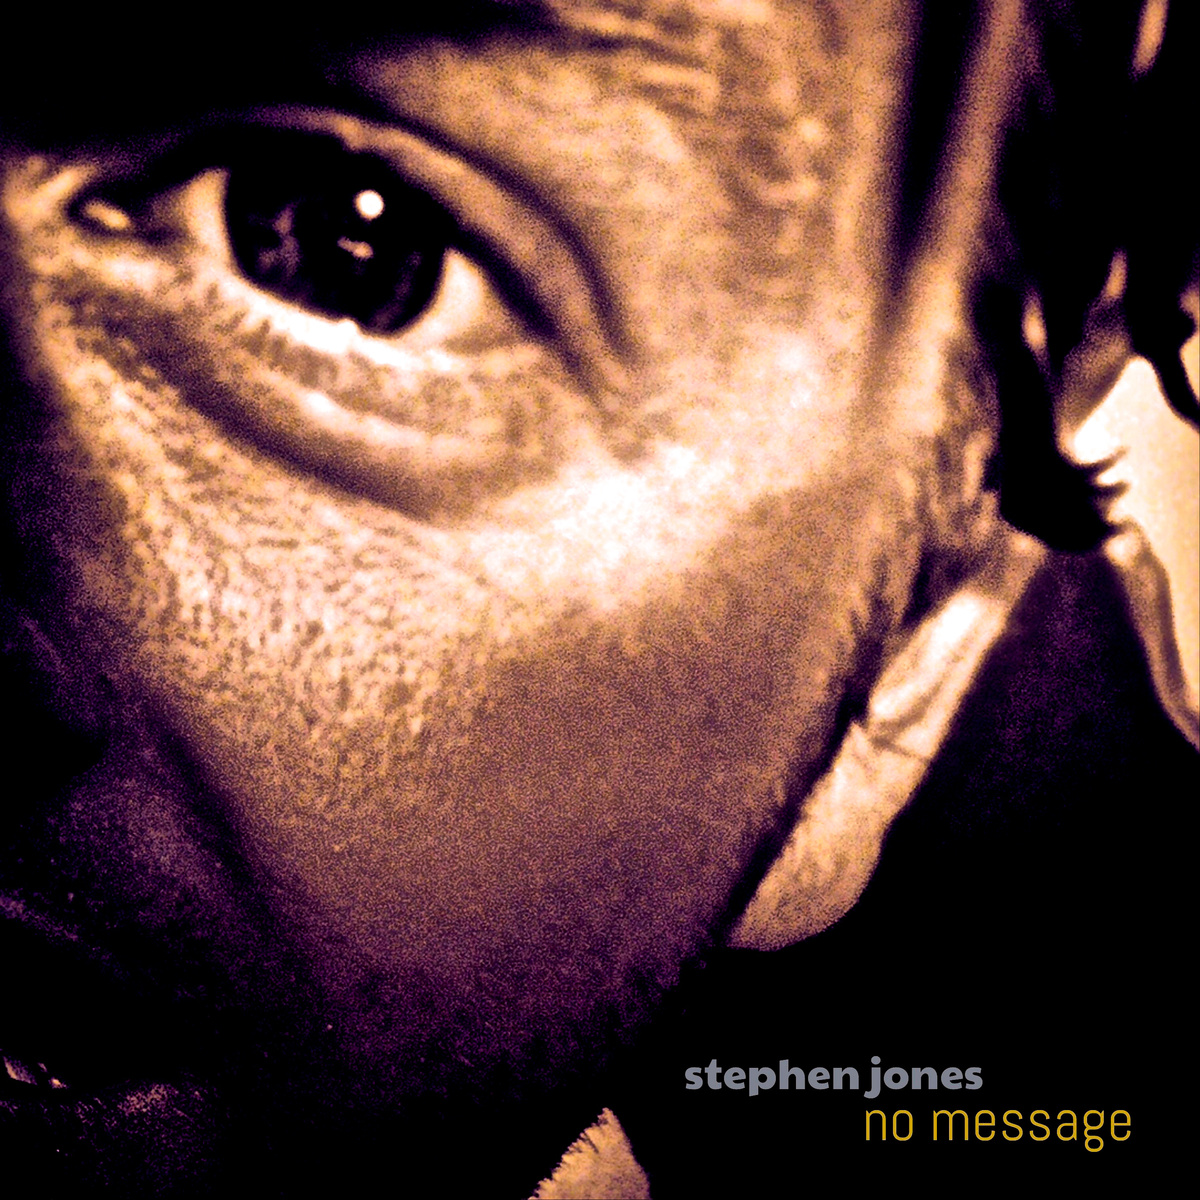 STEPHEN JONES - NO MESSAGE